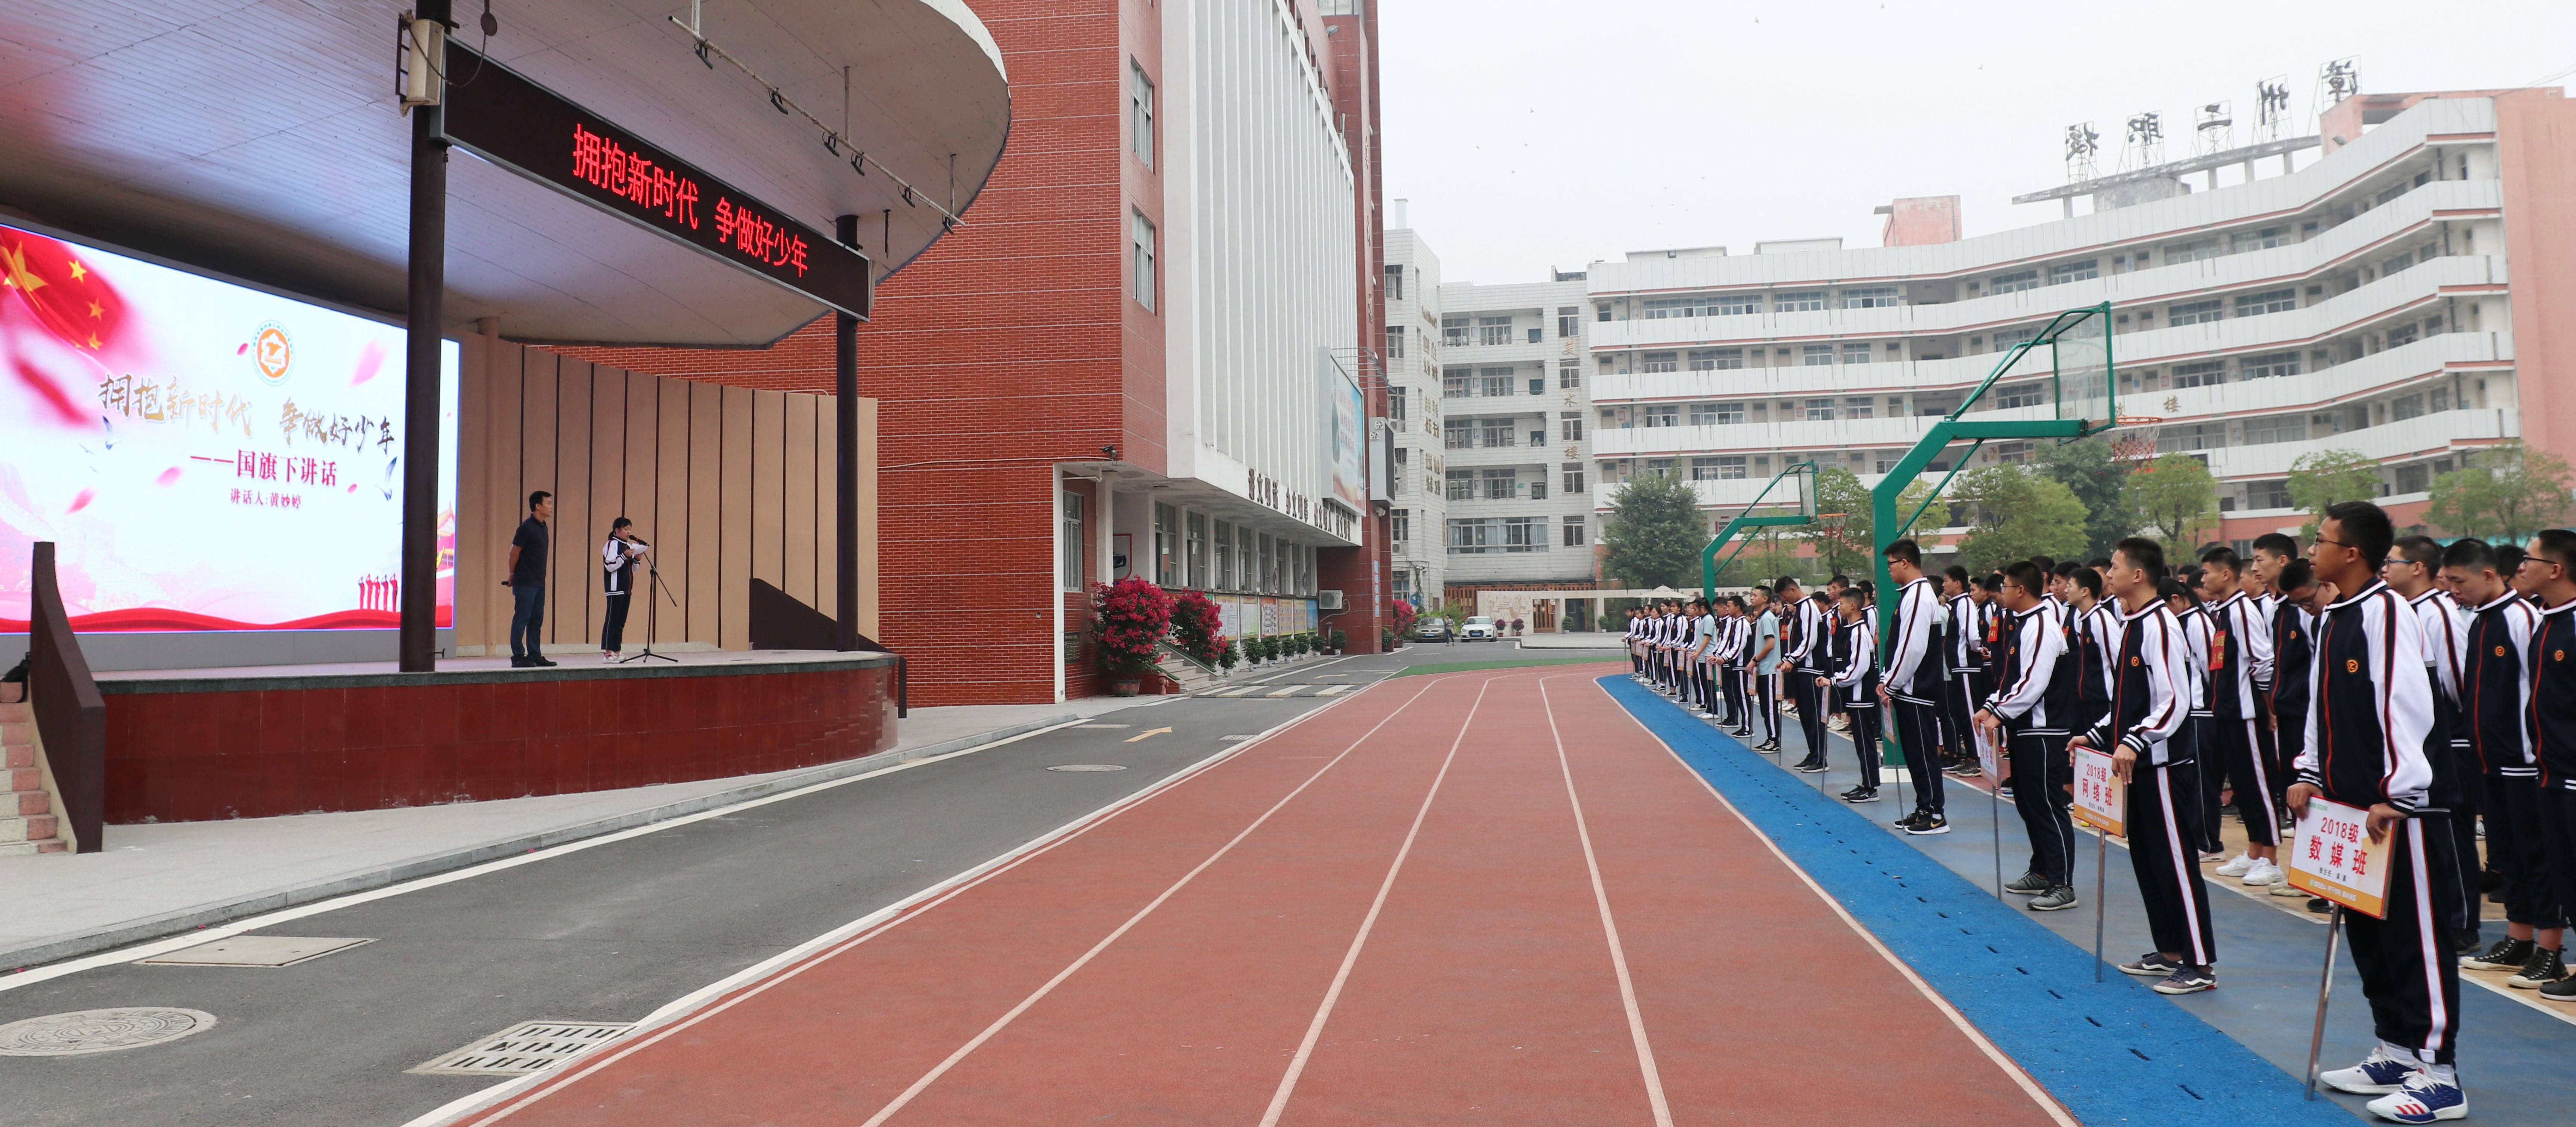 漳州二职校举行拥抱新时代 争做好少年主题国旗下讲话活动